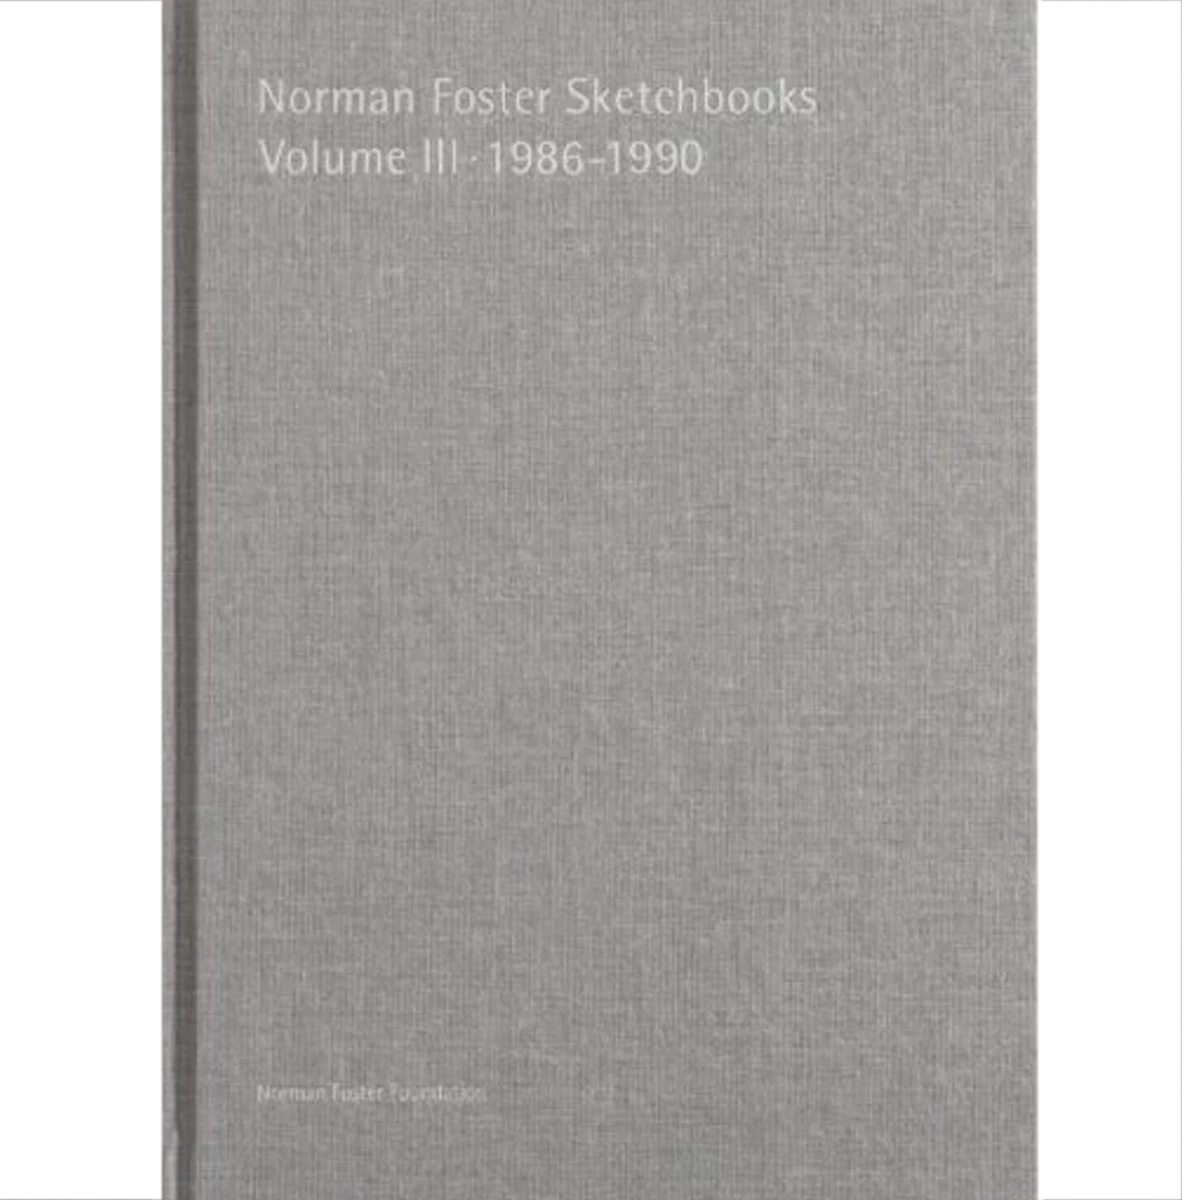 Norman Foster Sketchbooks Vol. III